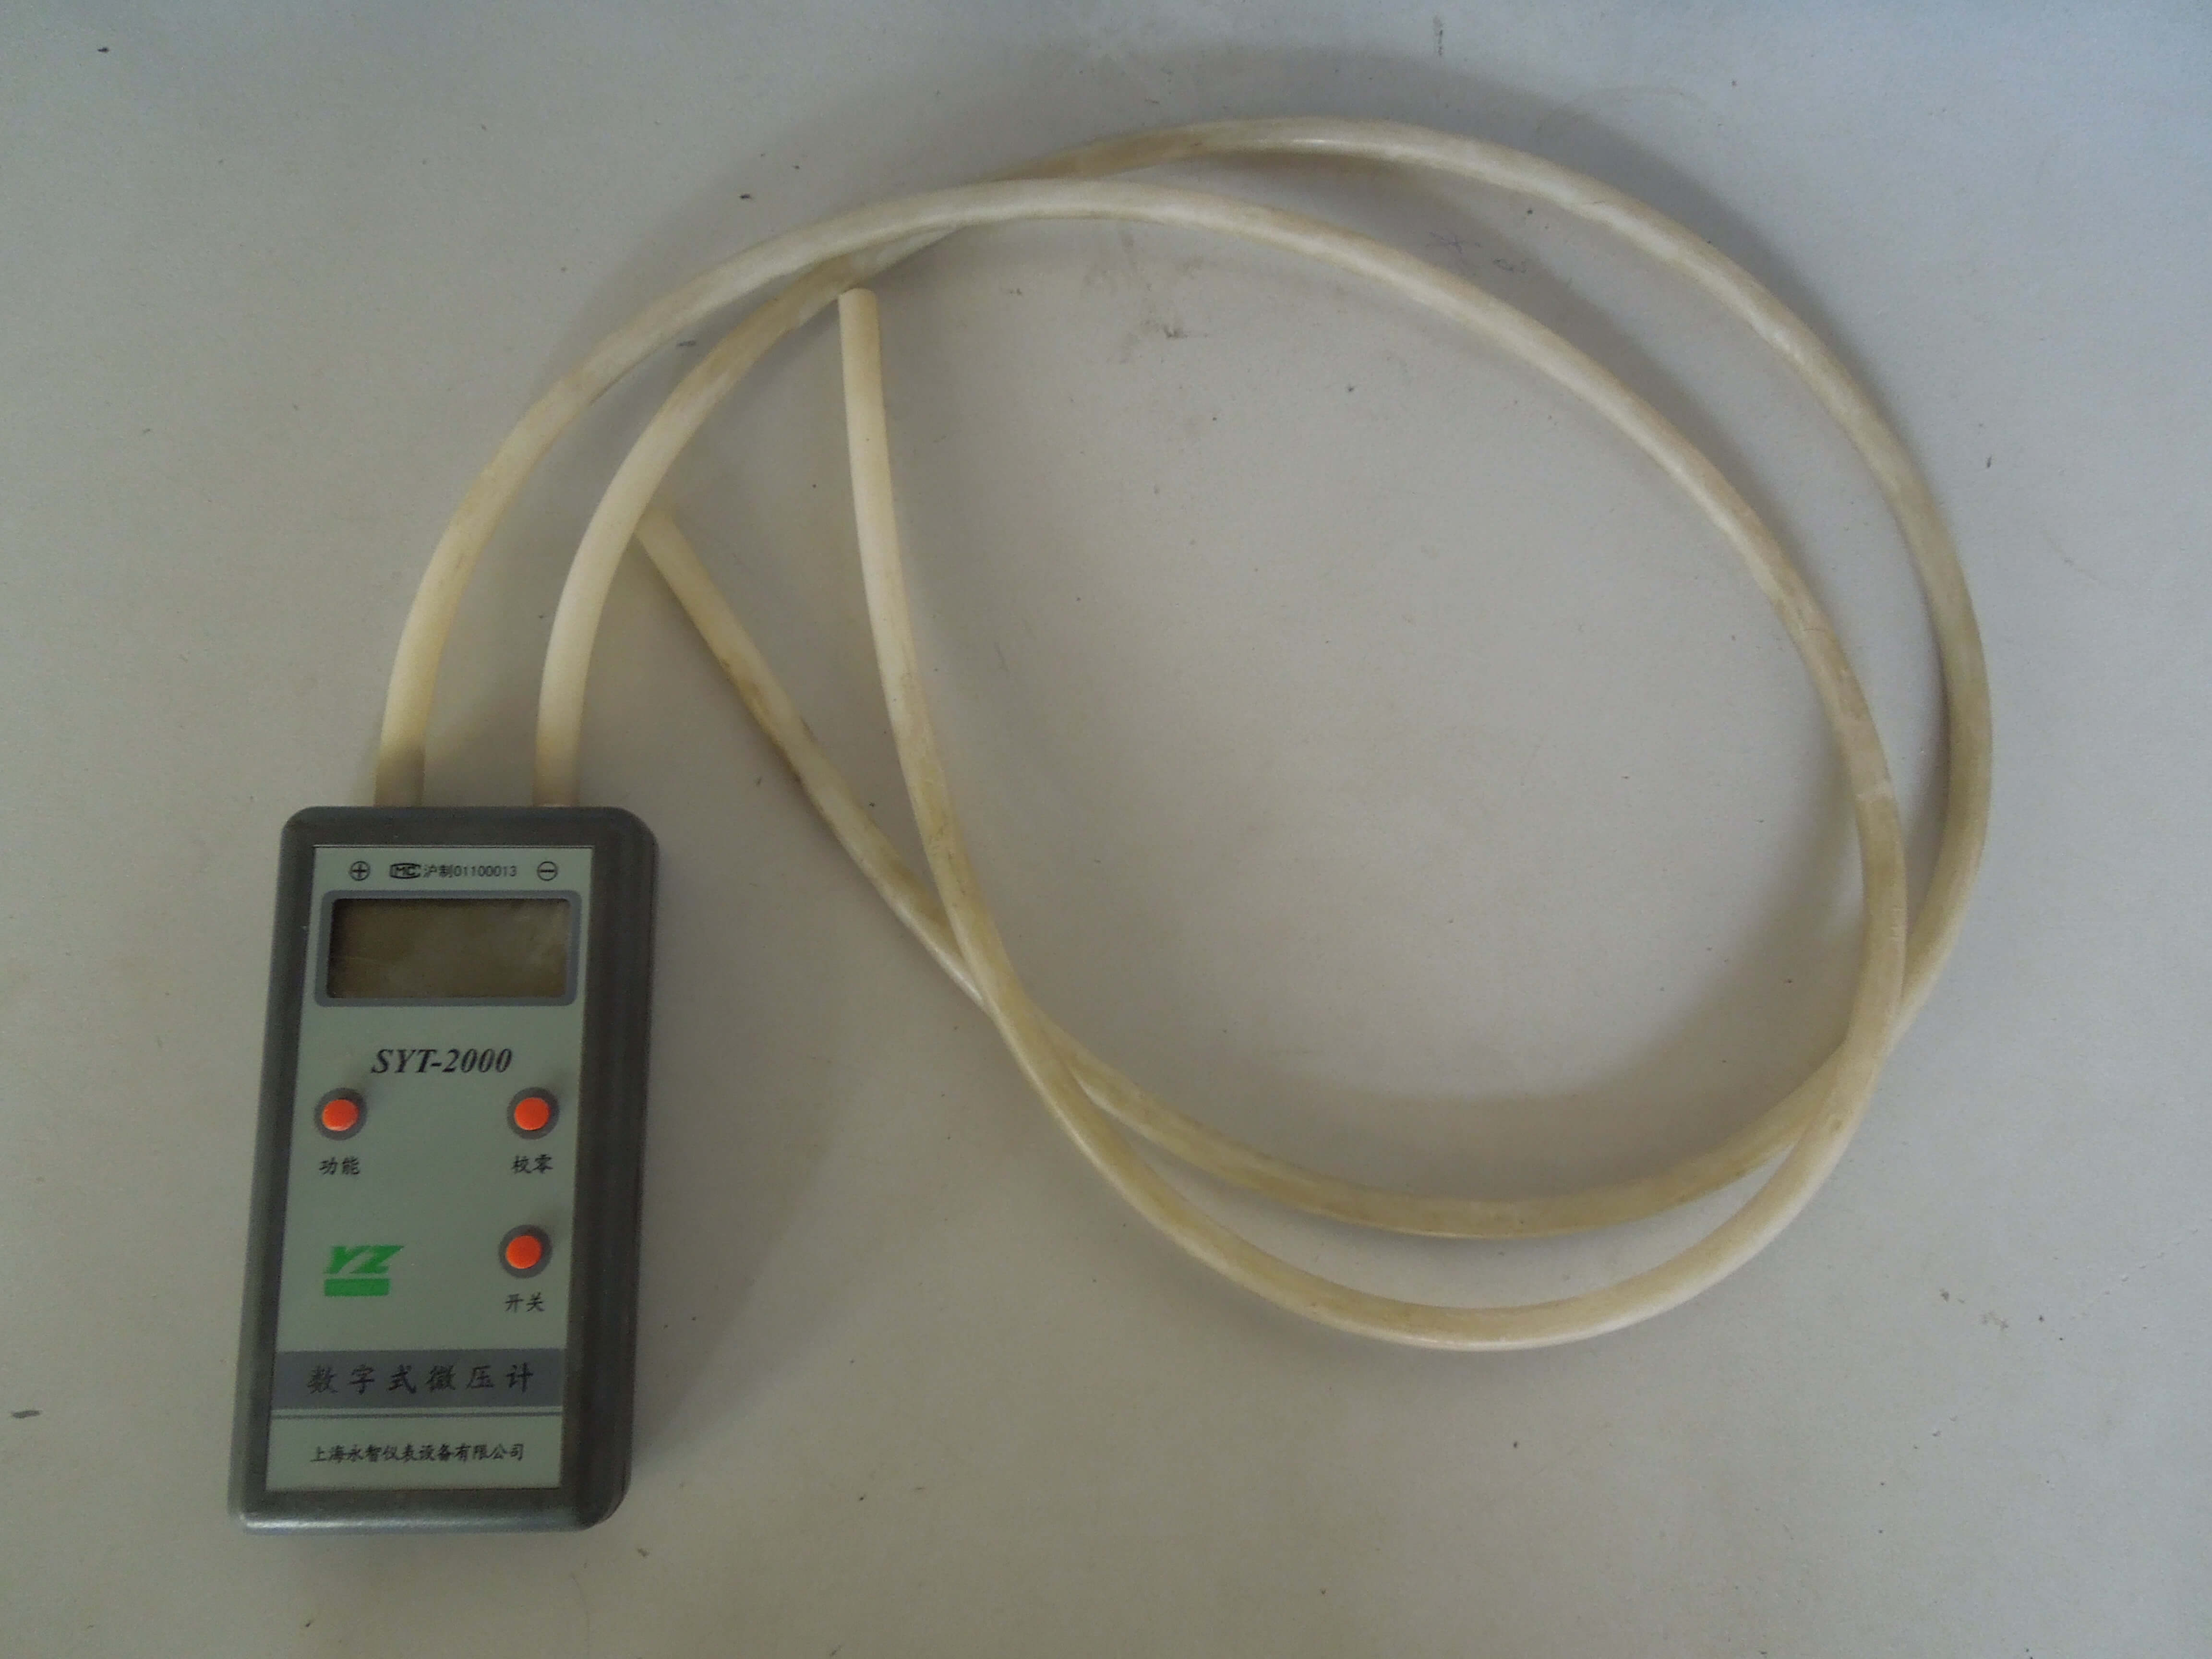 Koji se instrument koristi za mjerenje tlaka? 2 instrumenta koji se koriste za mjerenje tlaka